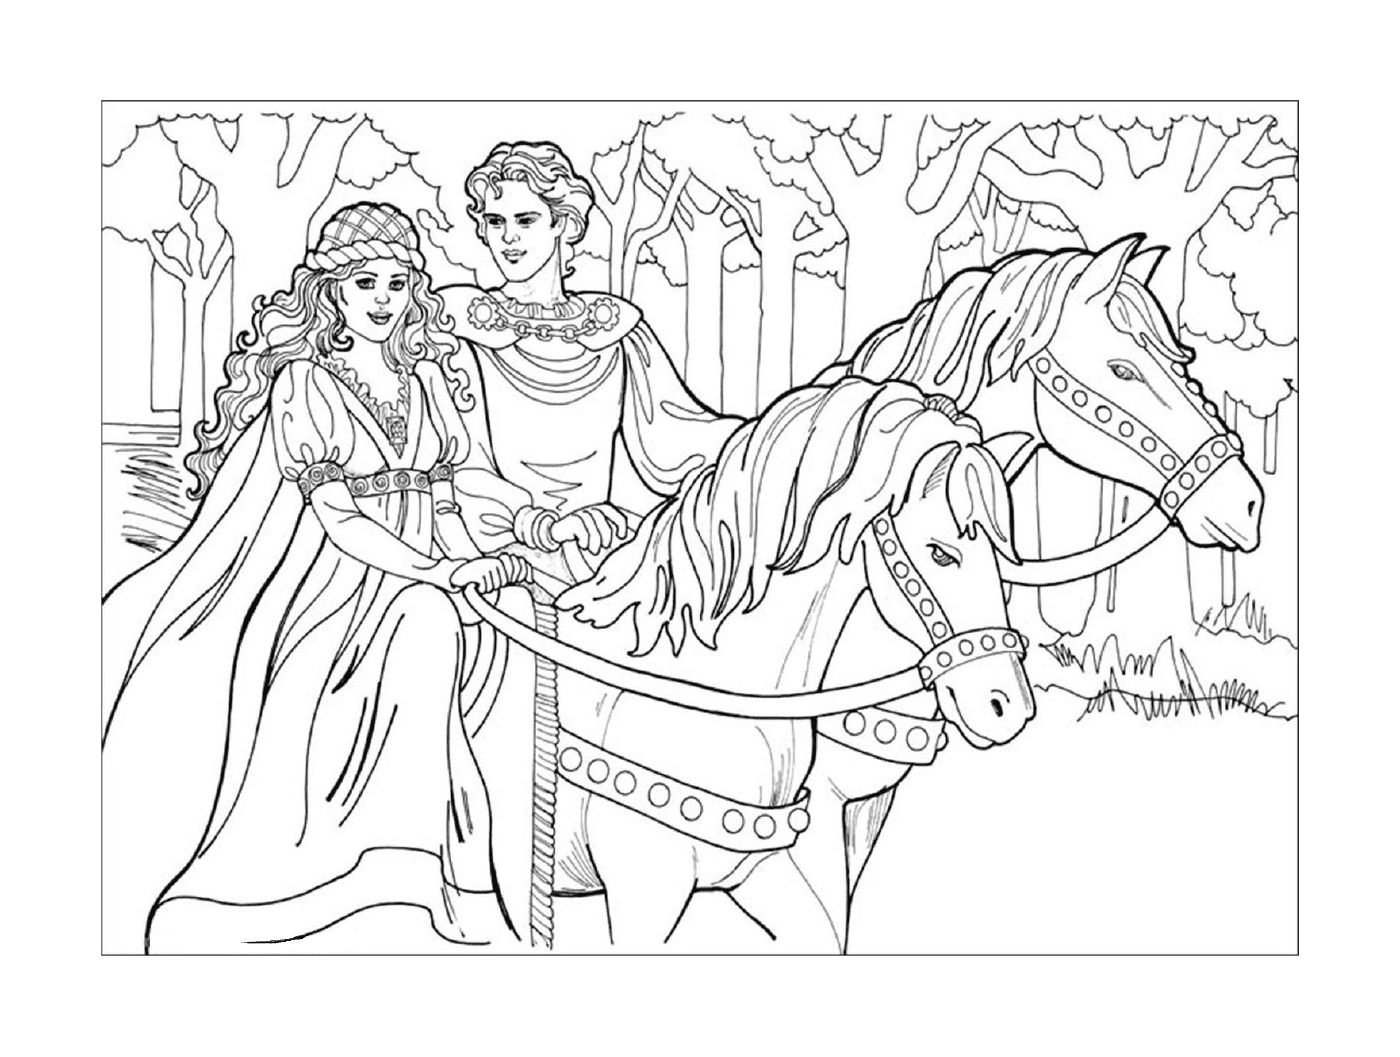  Princesa Disney, um casal em uma carruagem puxada por cavalos 